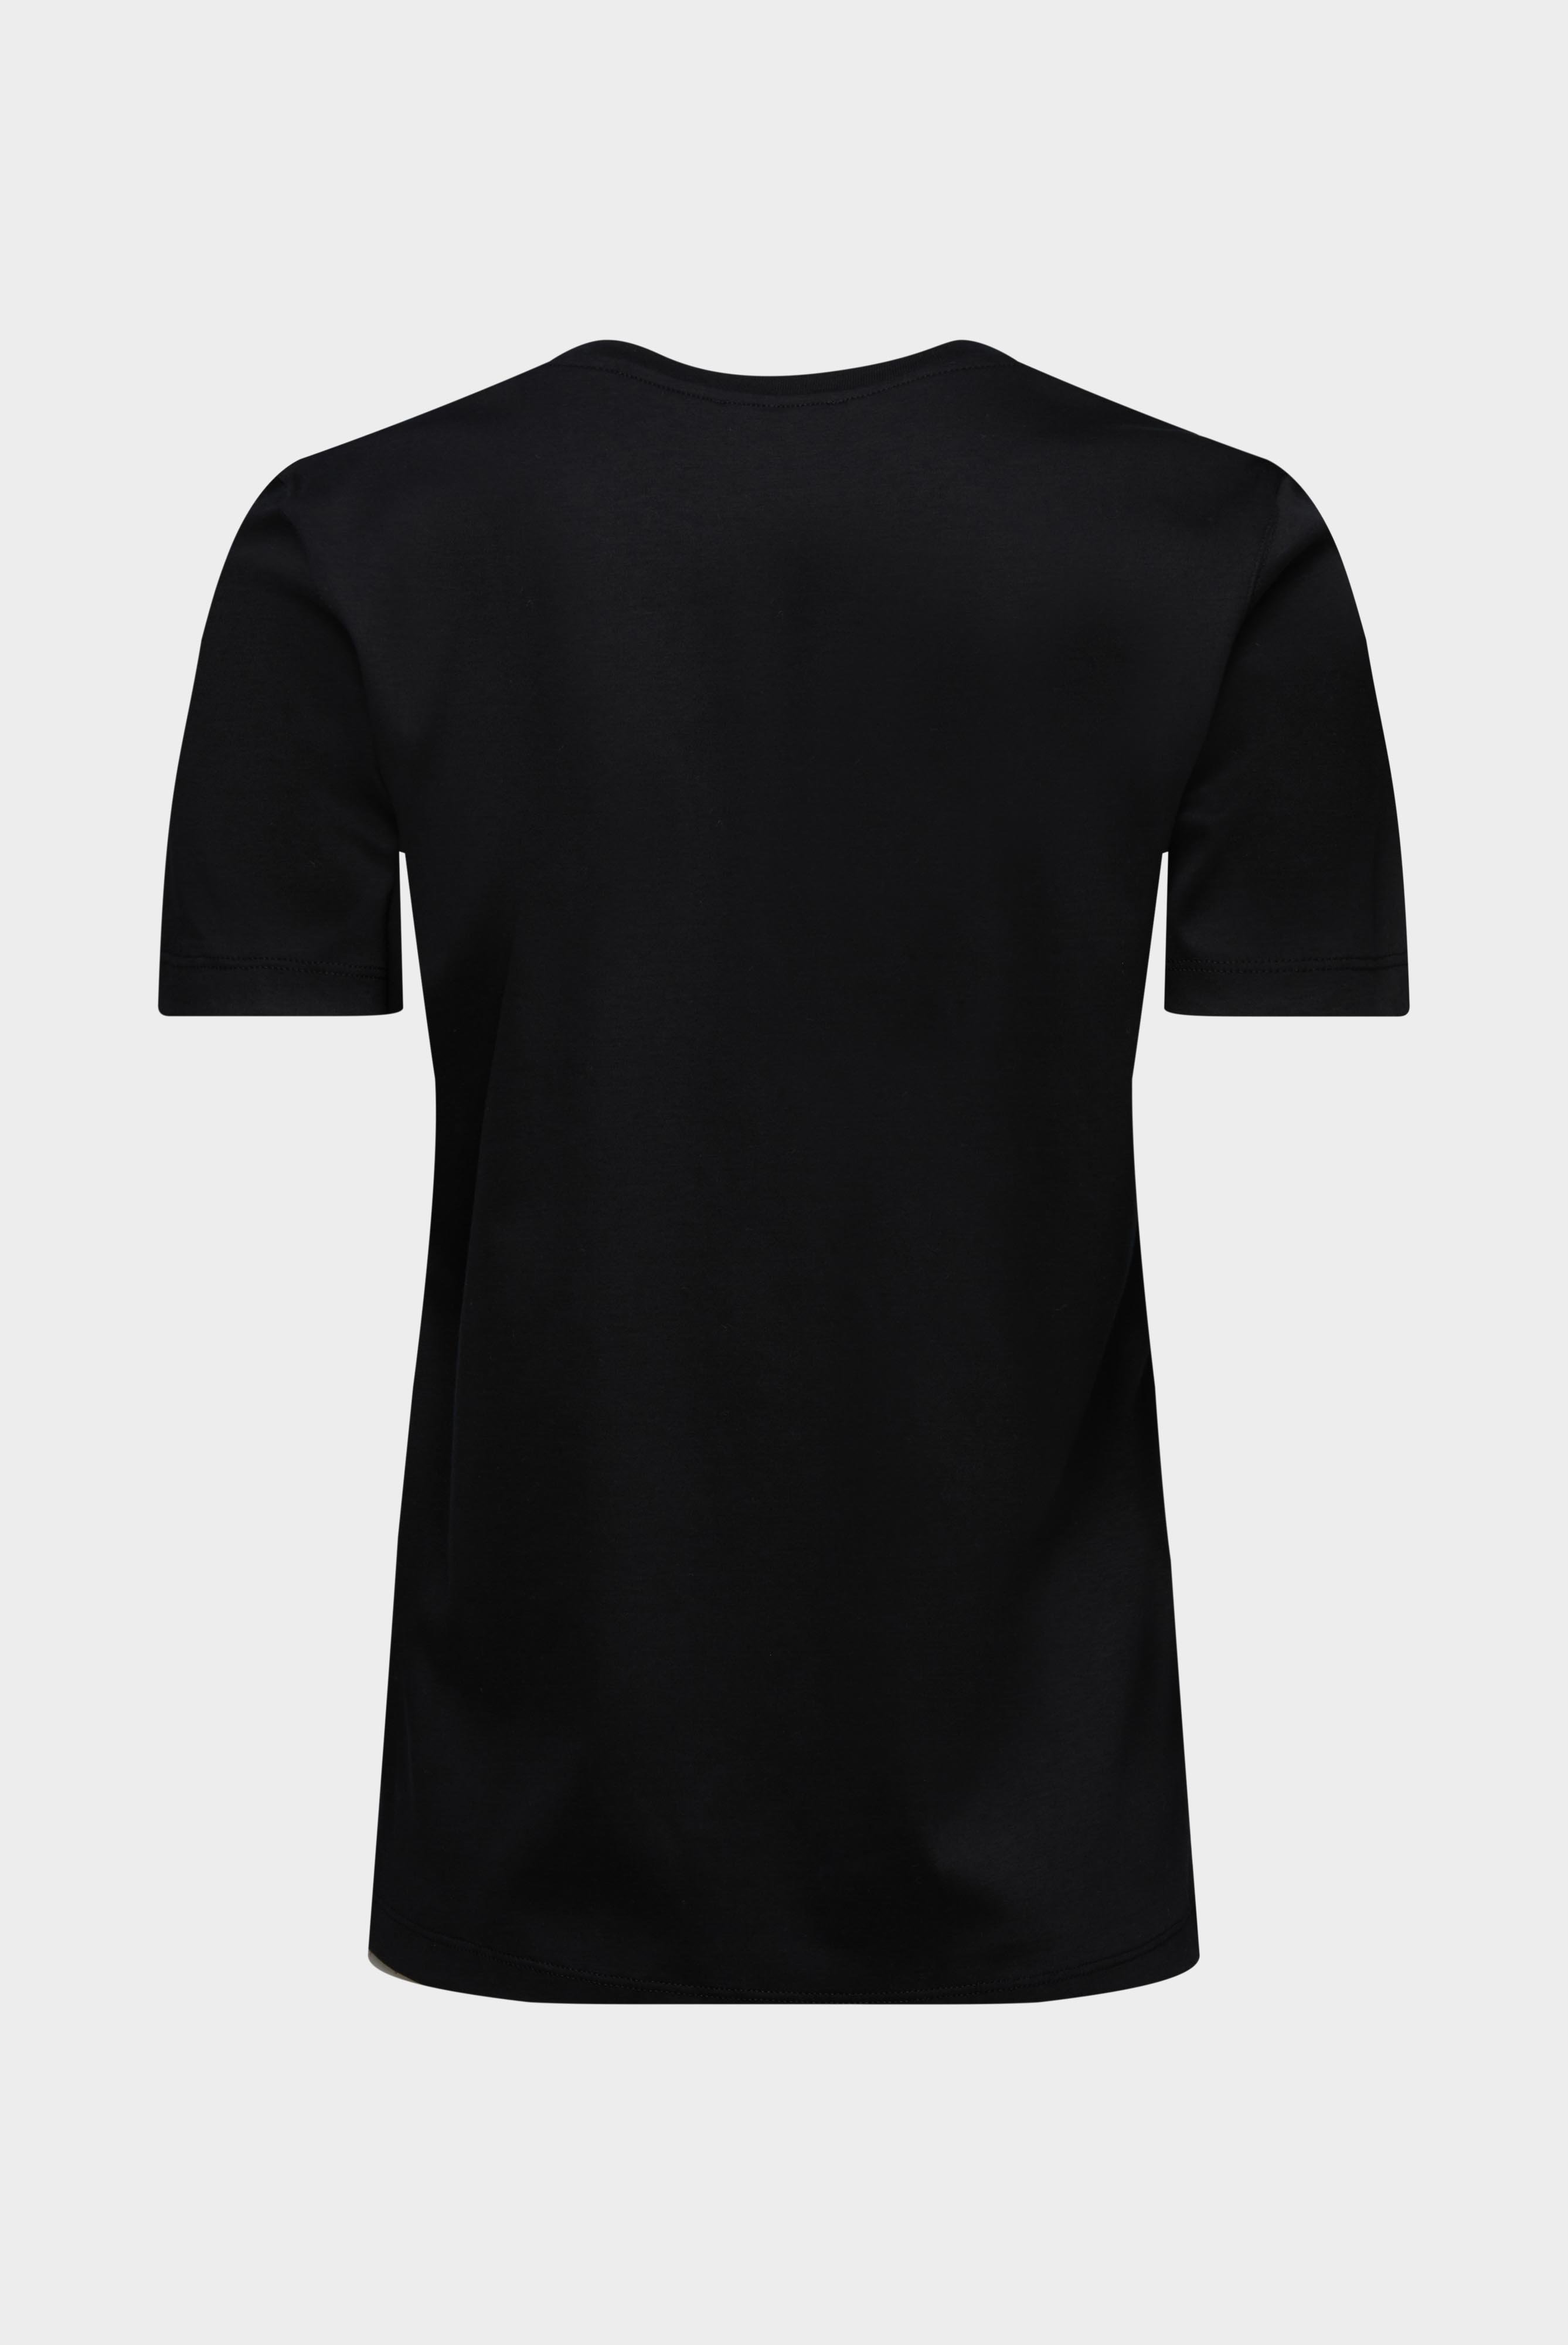 Tops & T-Shirts+Jersey T-Shirt+05.6384.18.180031.099.32